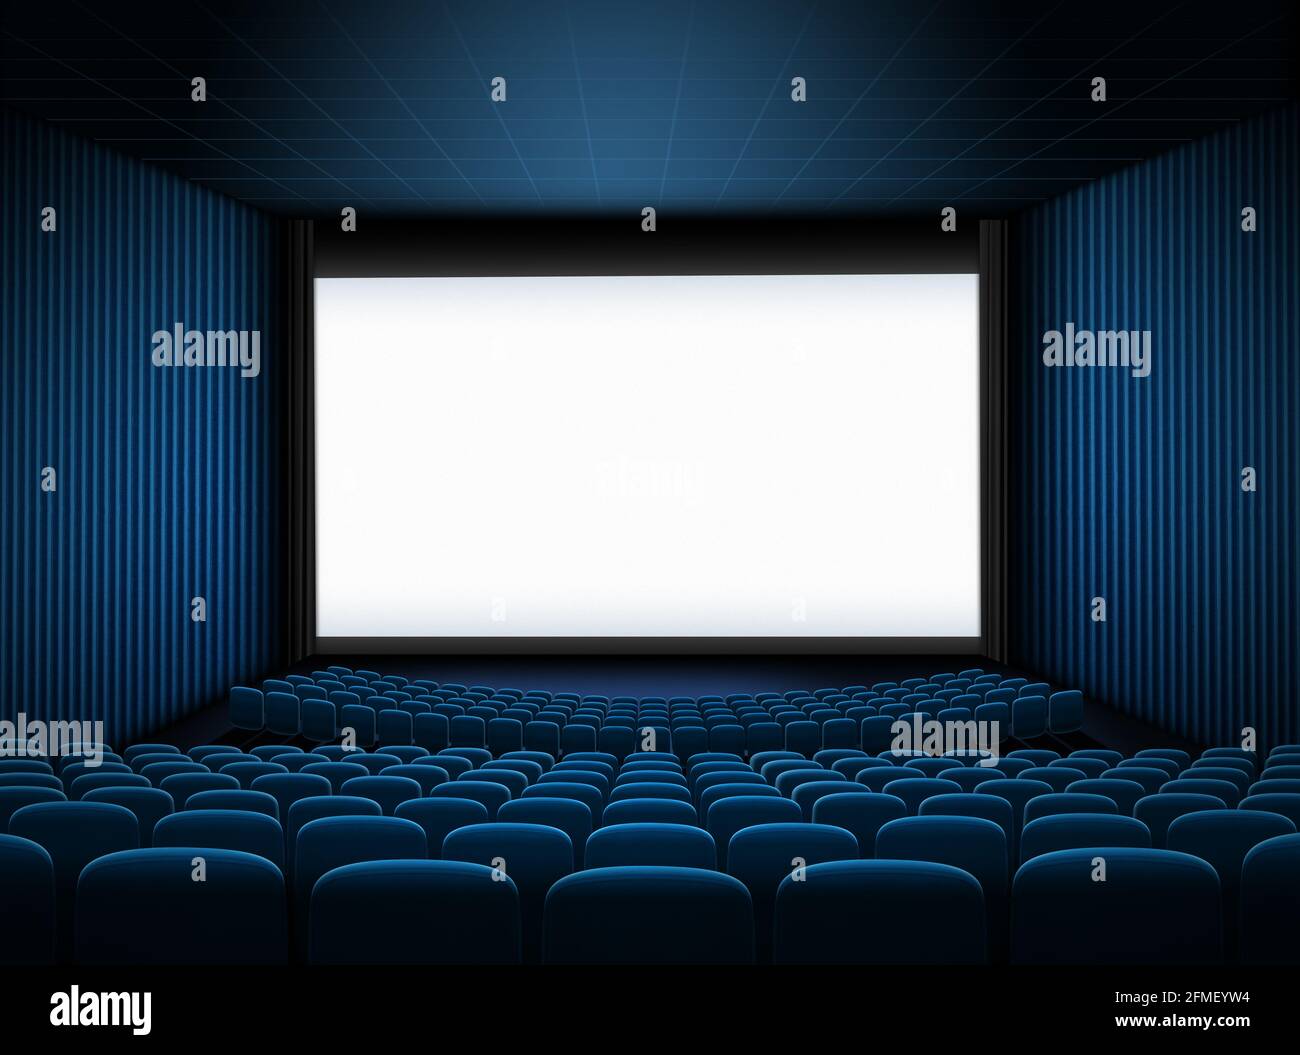 Kinosaal mit großer Leinwand und blauer 3D-Darstellung der Sitze Stockfoto